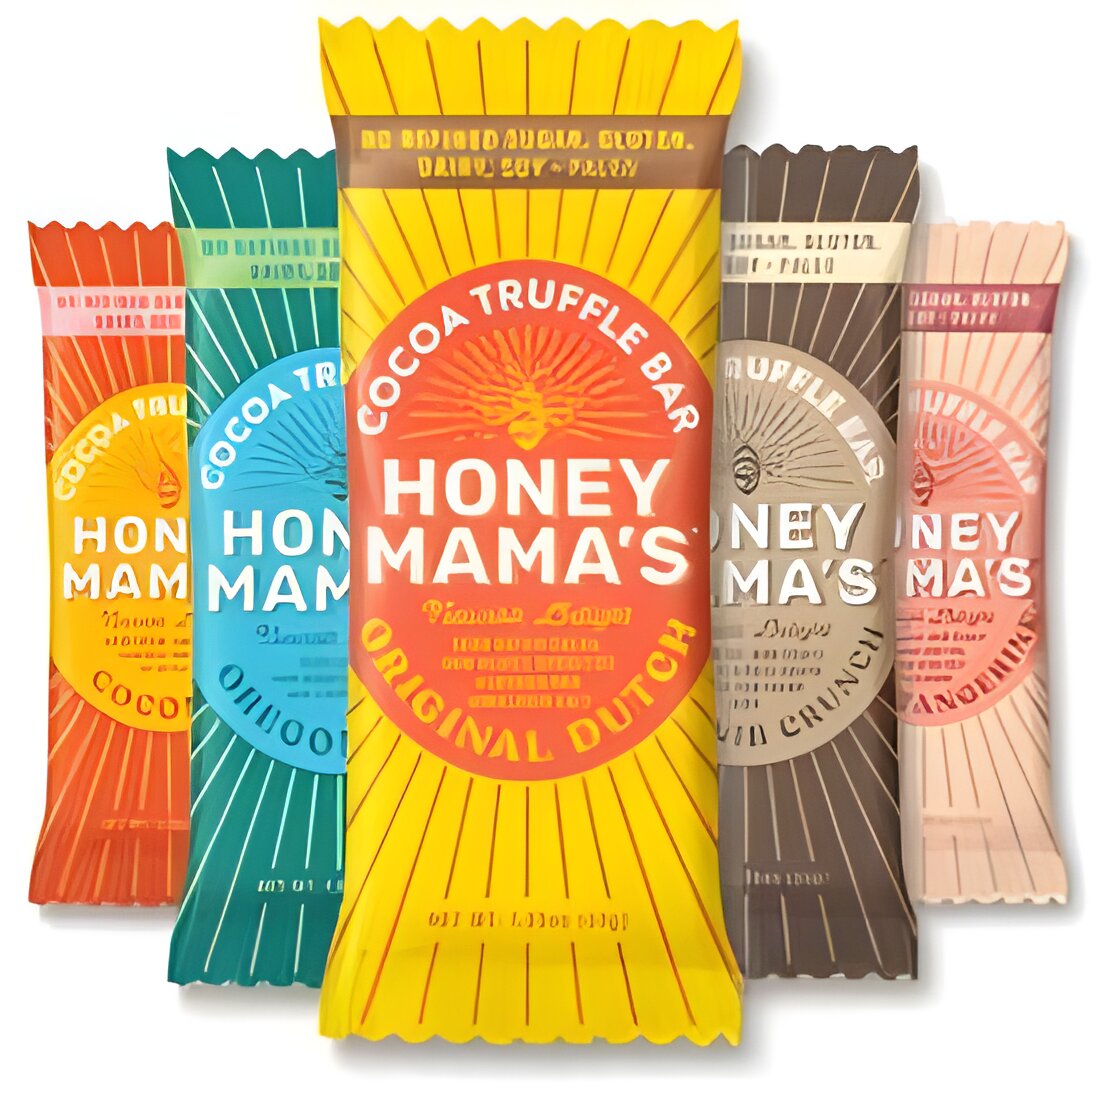 Free Honey Mama's Honey-Cocoa Bars